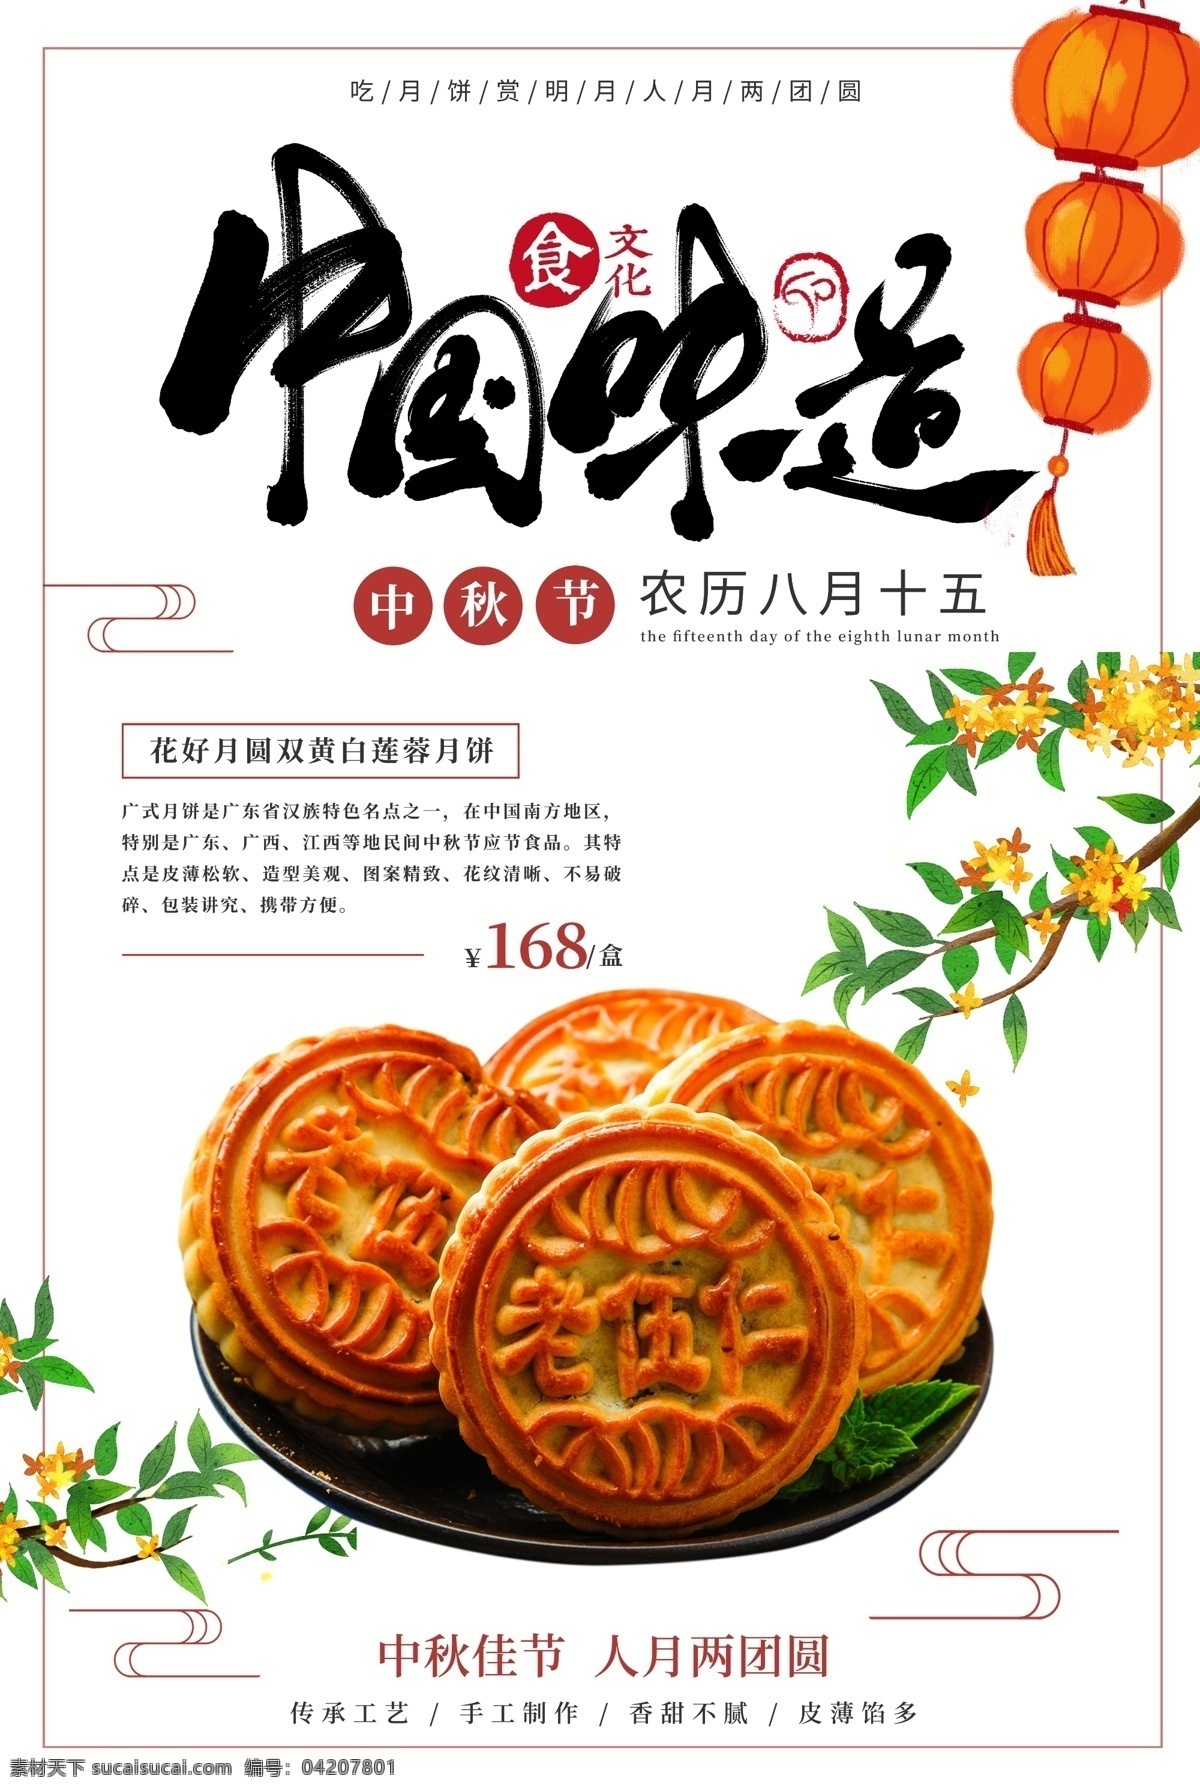 中国 味道 月饼 活动 宣传海报 中国味道 宣传 海报 传统节日